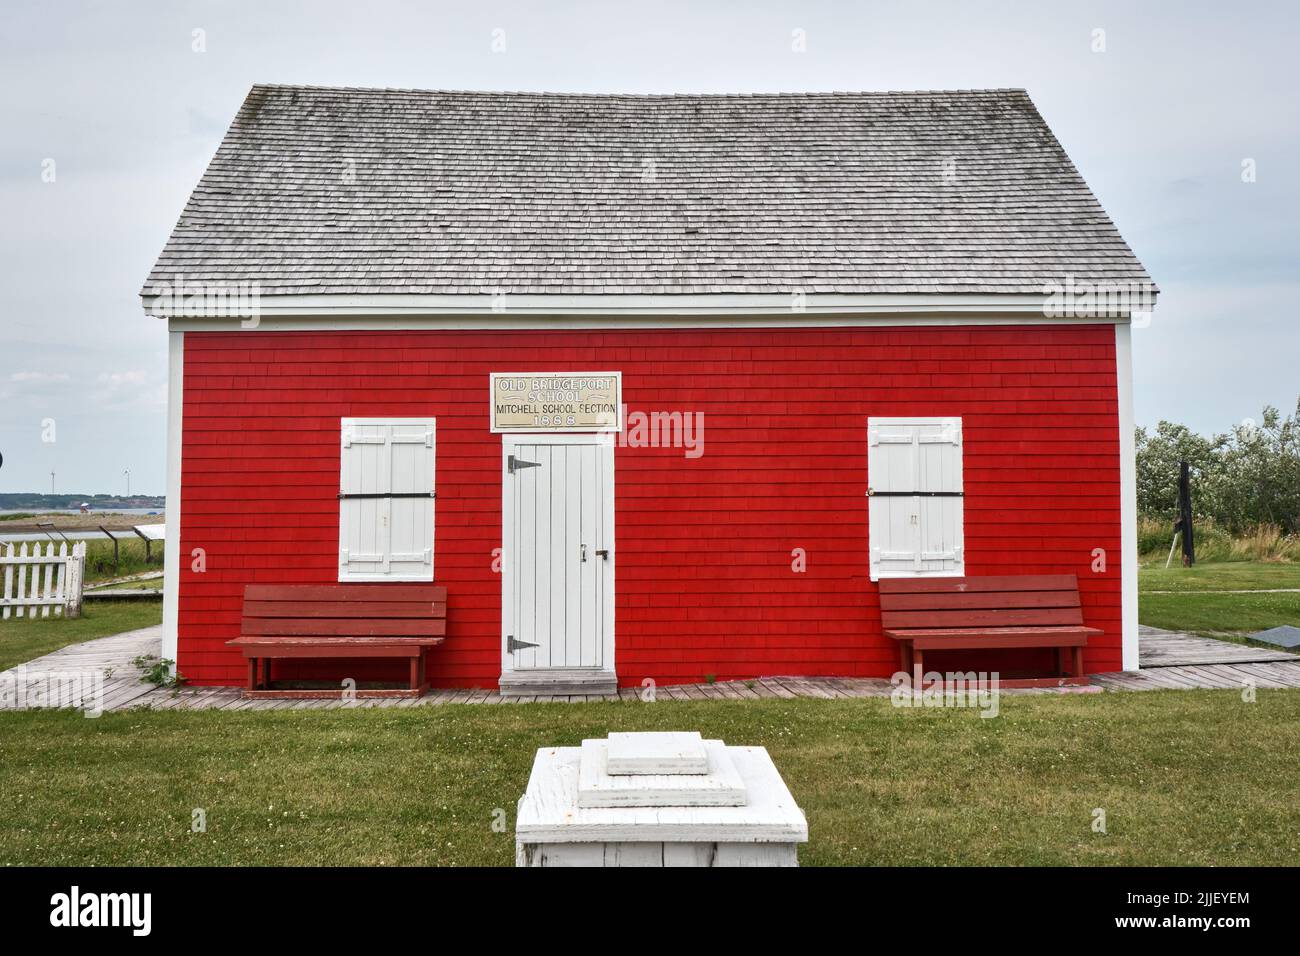 Construit dans le style architectural de la côte est, recouvert de milk-shakes en cèdre, l'ancienne école Bridgeport construite en 1888 est située dans le Dominion Cape Breton I Banque D'Images